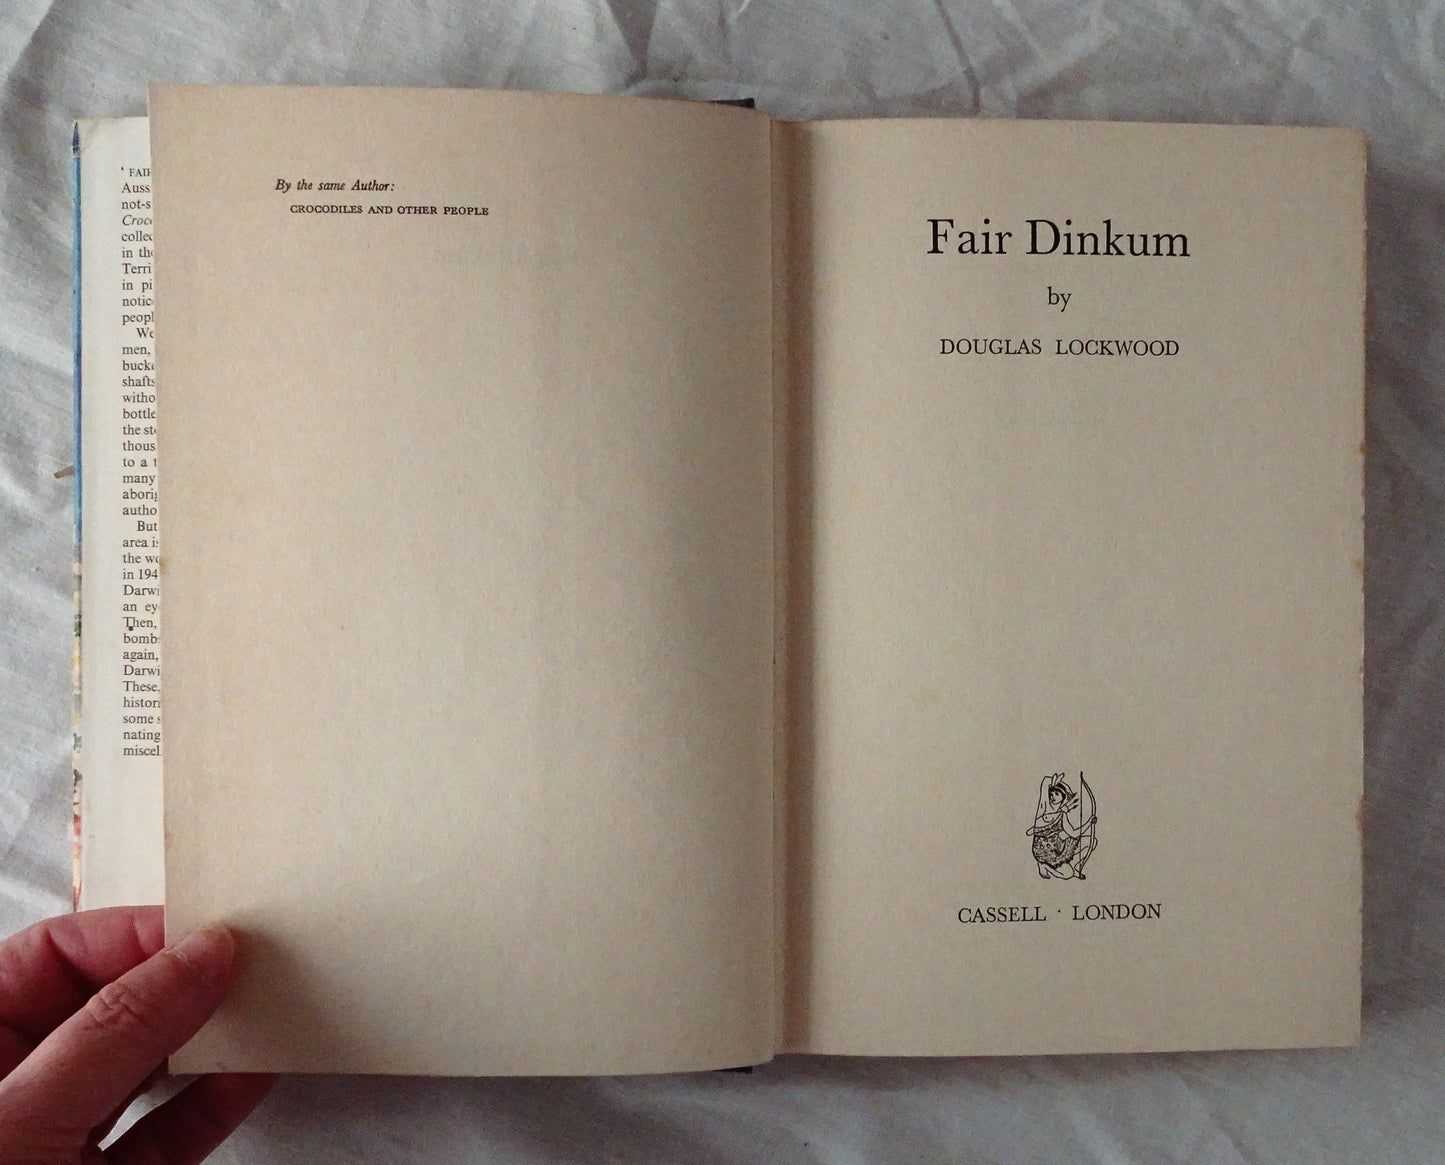 Fair Dinkum by Douglas Lockwood